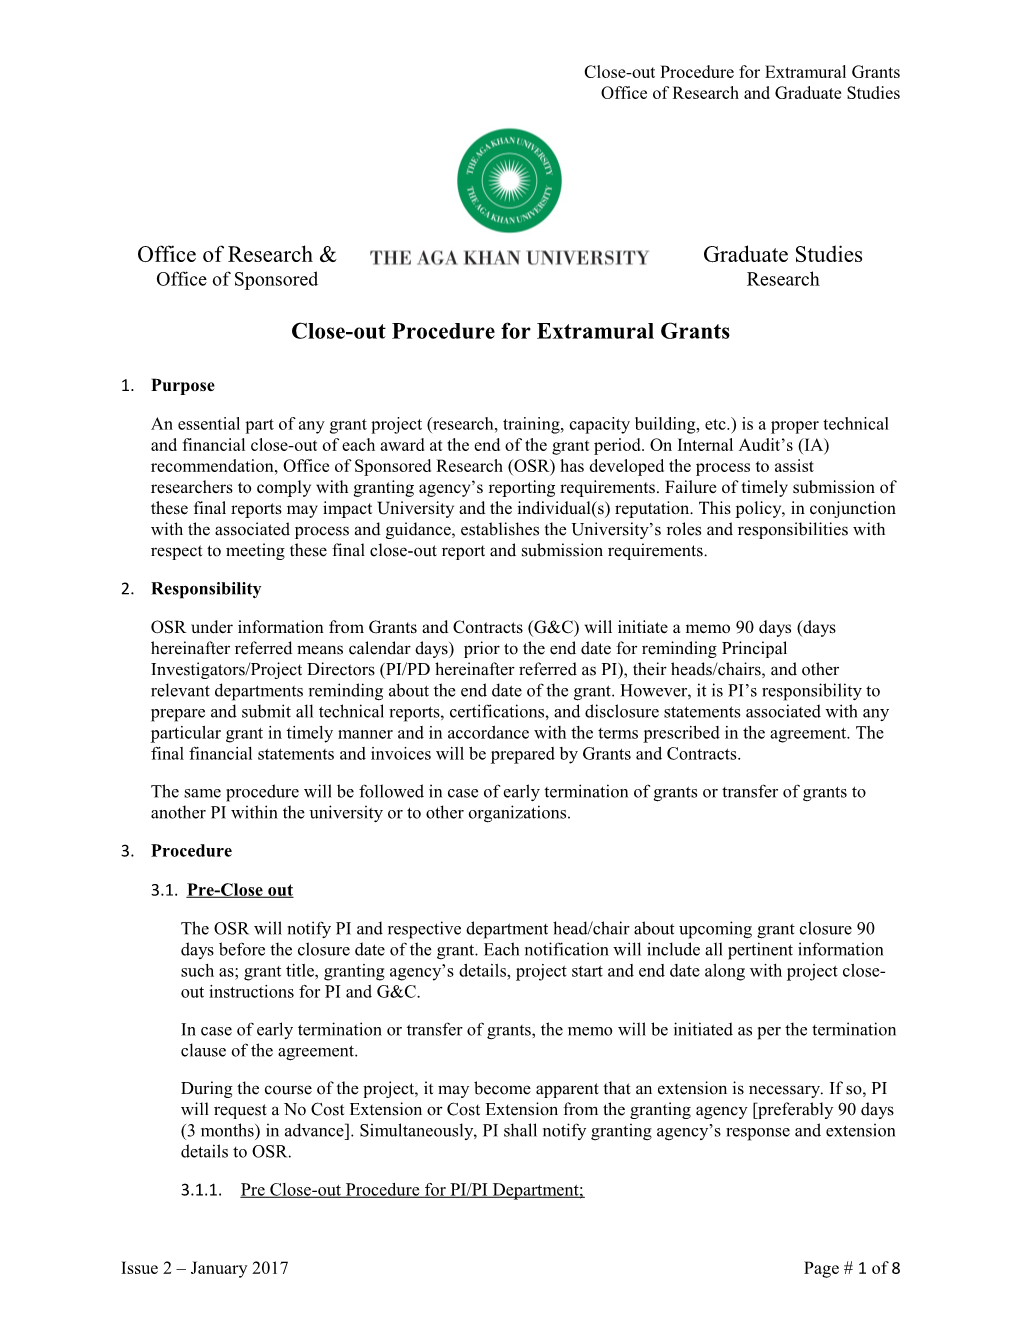 OSR Grant Closeout Procedure and Checklist